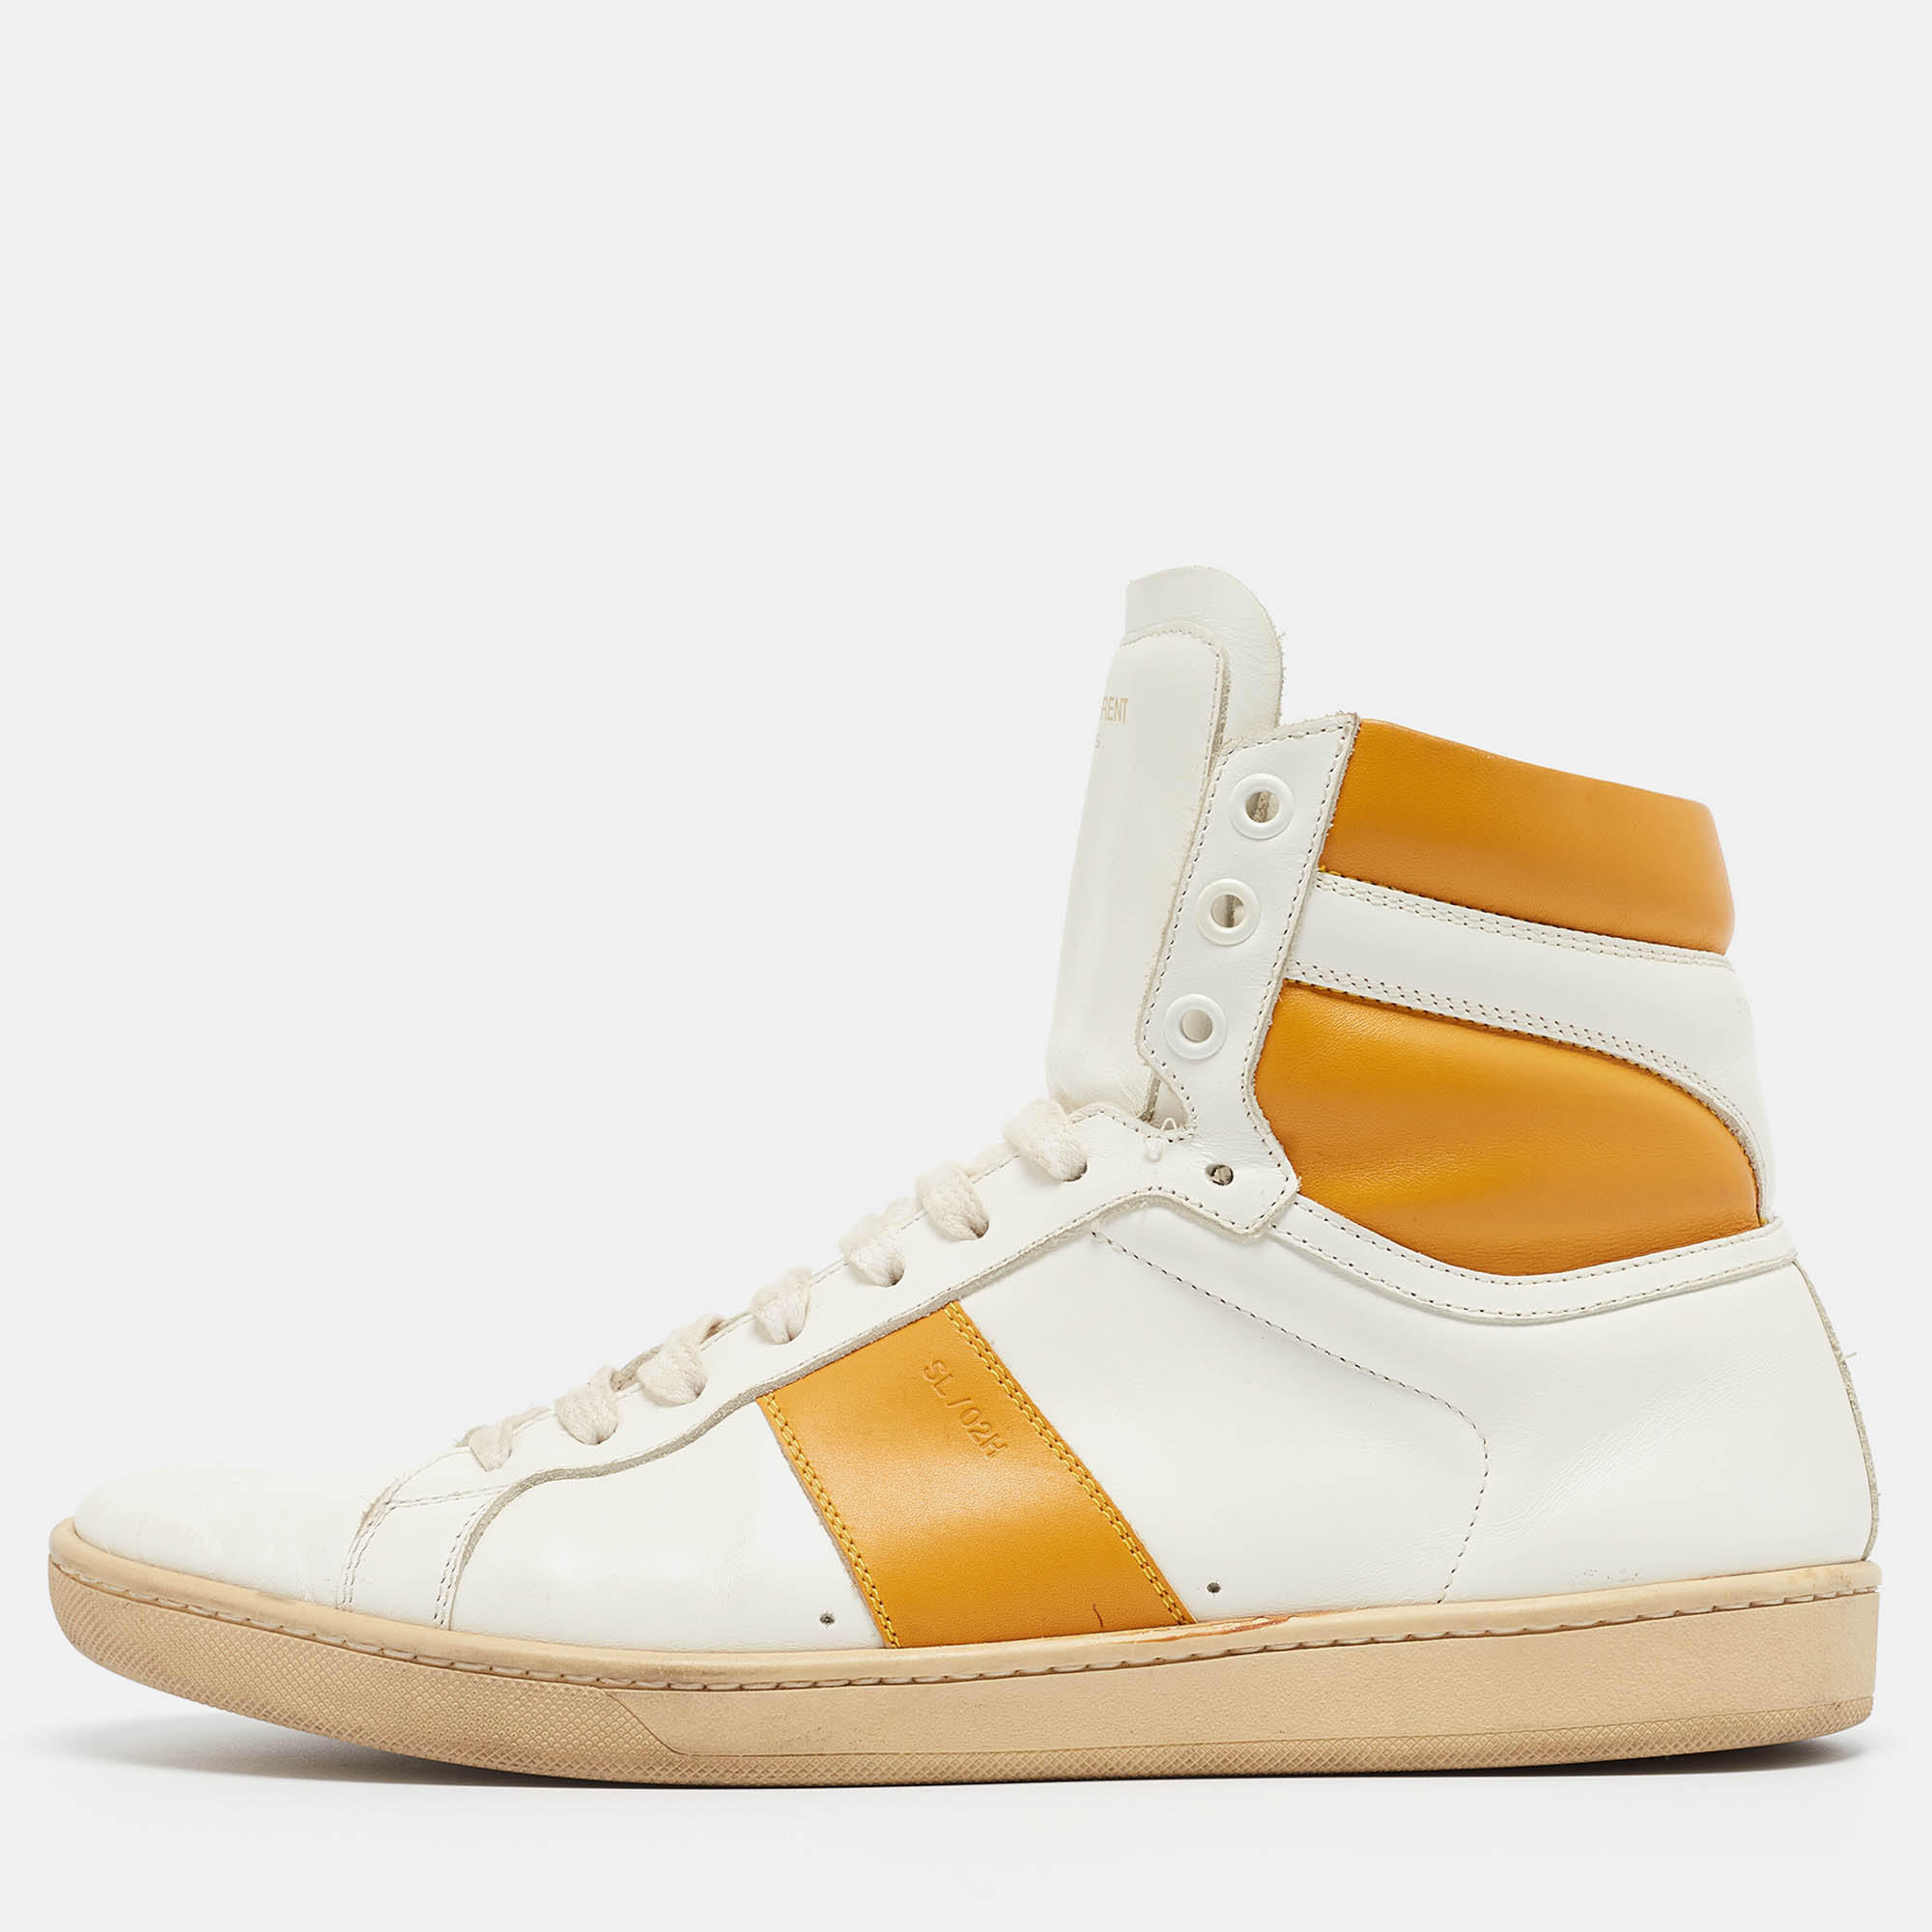 Saint laurent paris saint laurent white/orange leather high top sneakers size 42